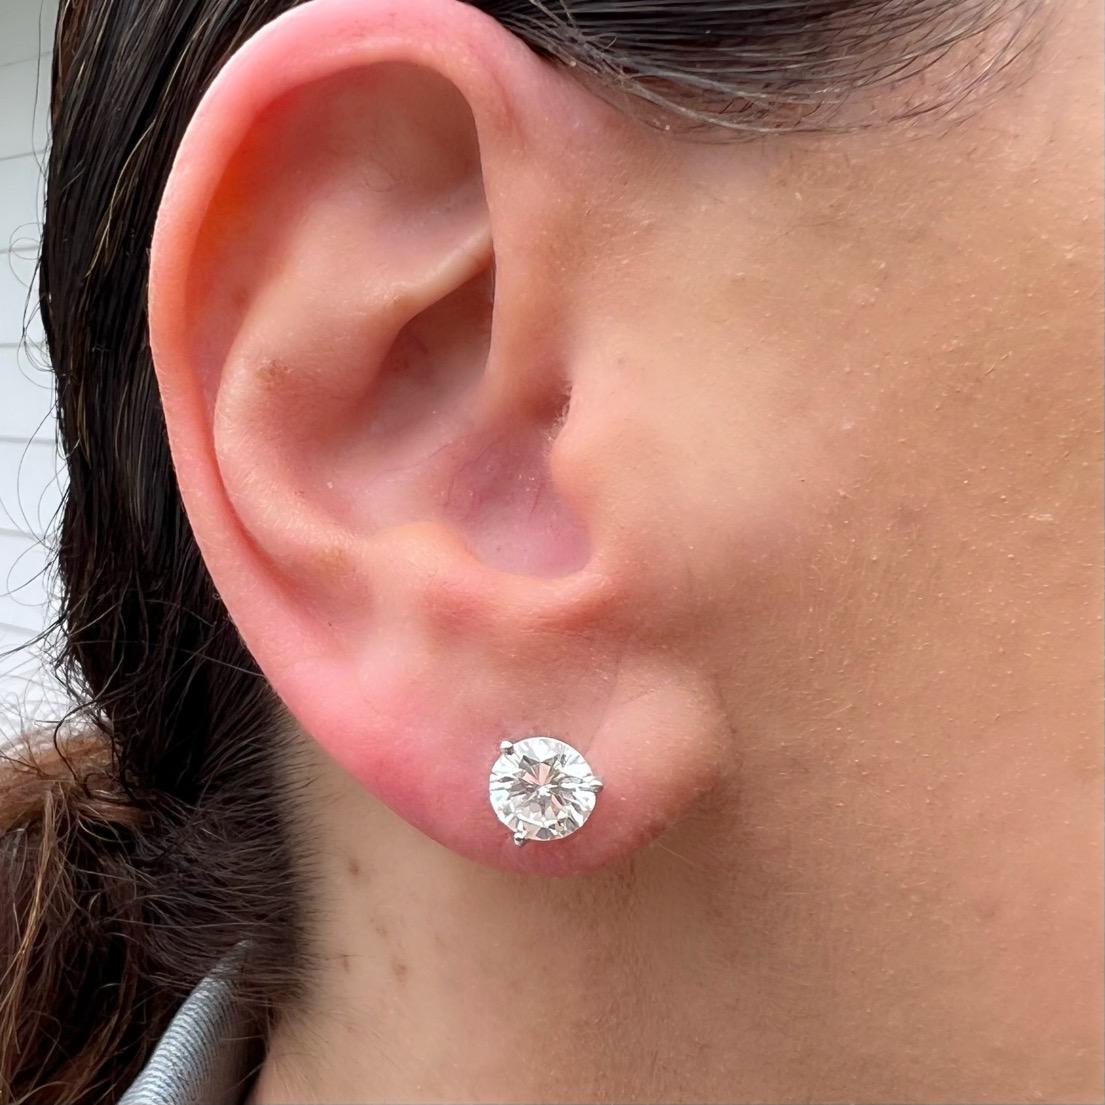 Des clous d'oreilles en diamant destinés à être portés toute une vie ! Ces clous d'oreilles en diamants ronds de taille brillant, extrêmement blancs et propres, présentent deux diamants incroyablement bien assortis pesant 1,57 carat et 1,55 carat,